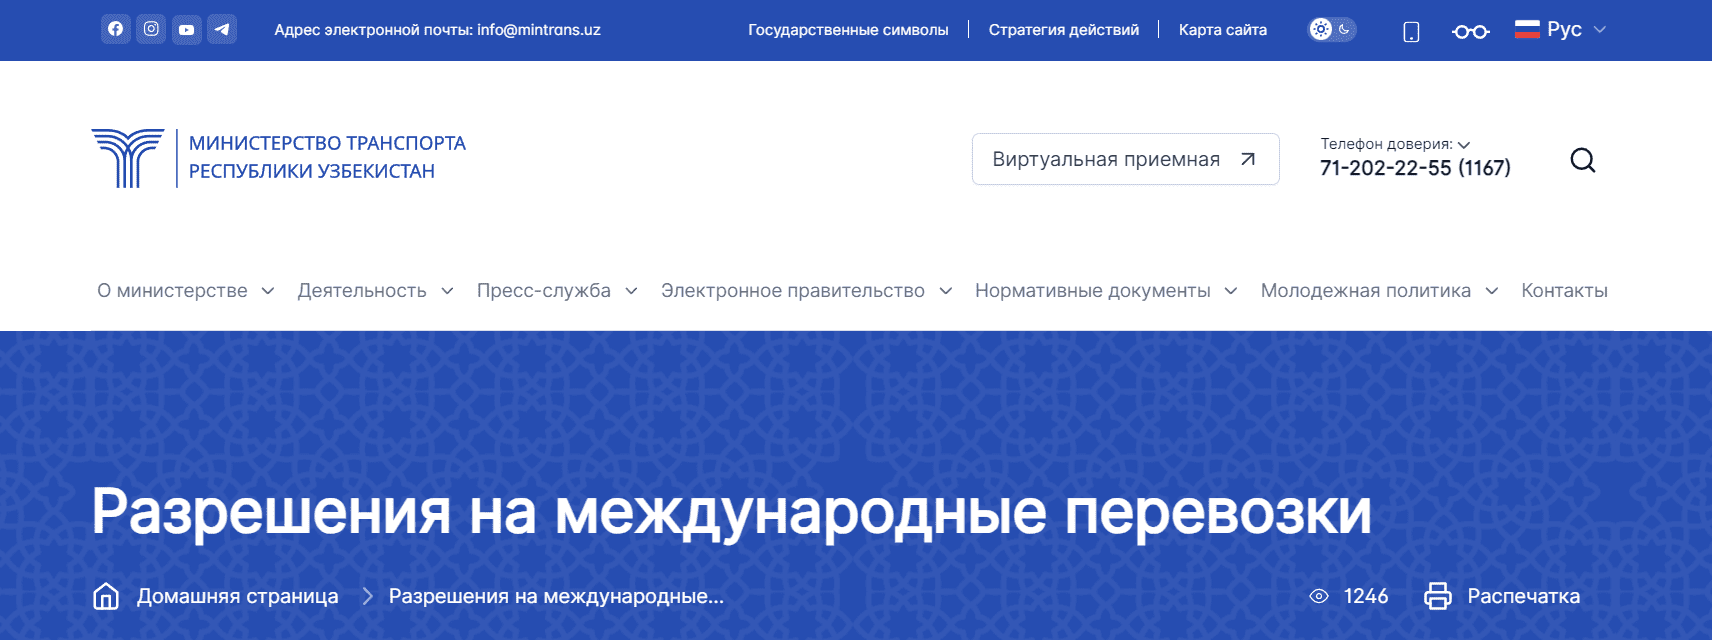 Министерство транспорта Республики Узбекистан (mintrans.uz) - официальный сайт